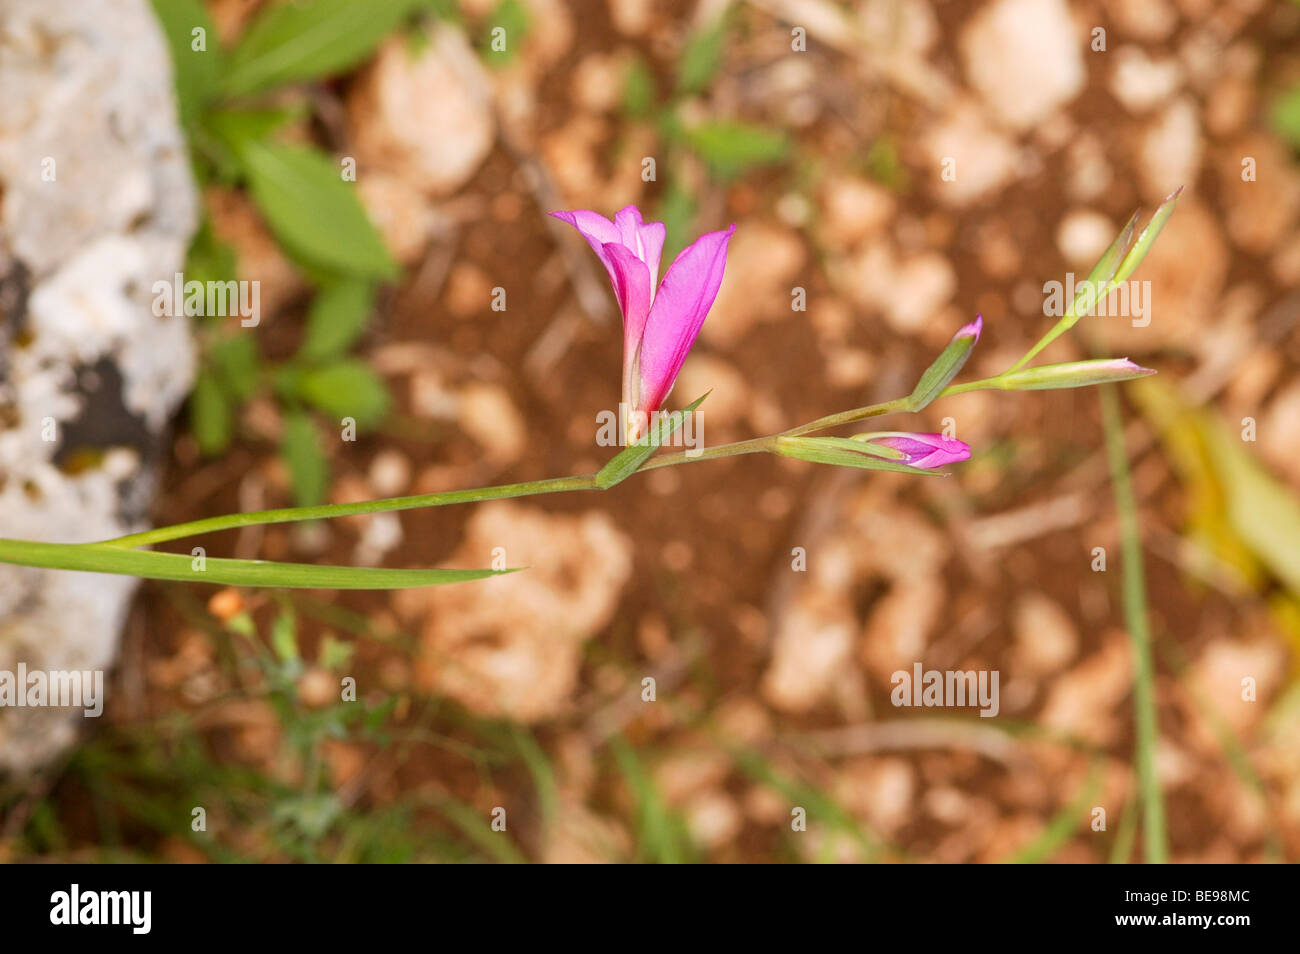 Israel, Corn Flag (Gladiolus atroviolaceus) Stock Photo